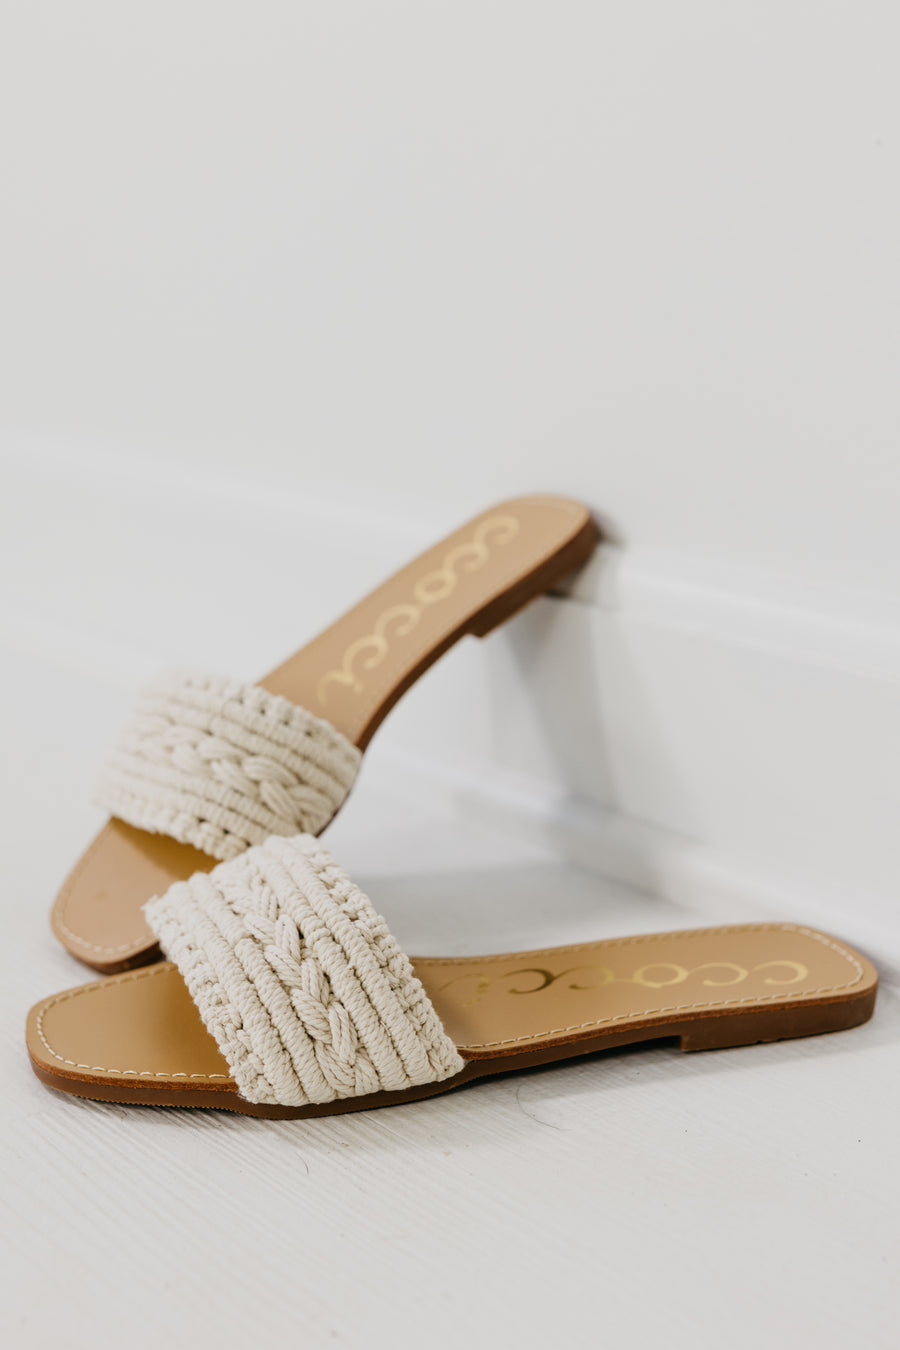 The Salma Woven Slide Sandal